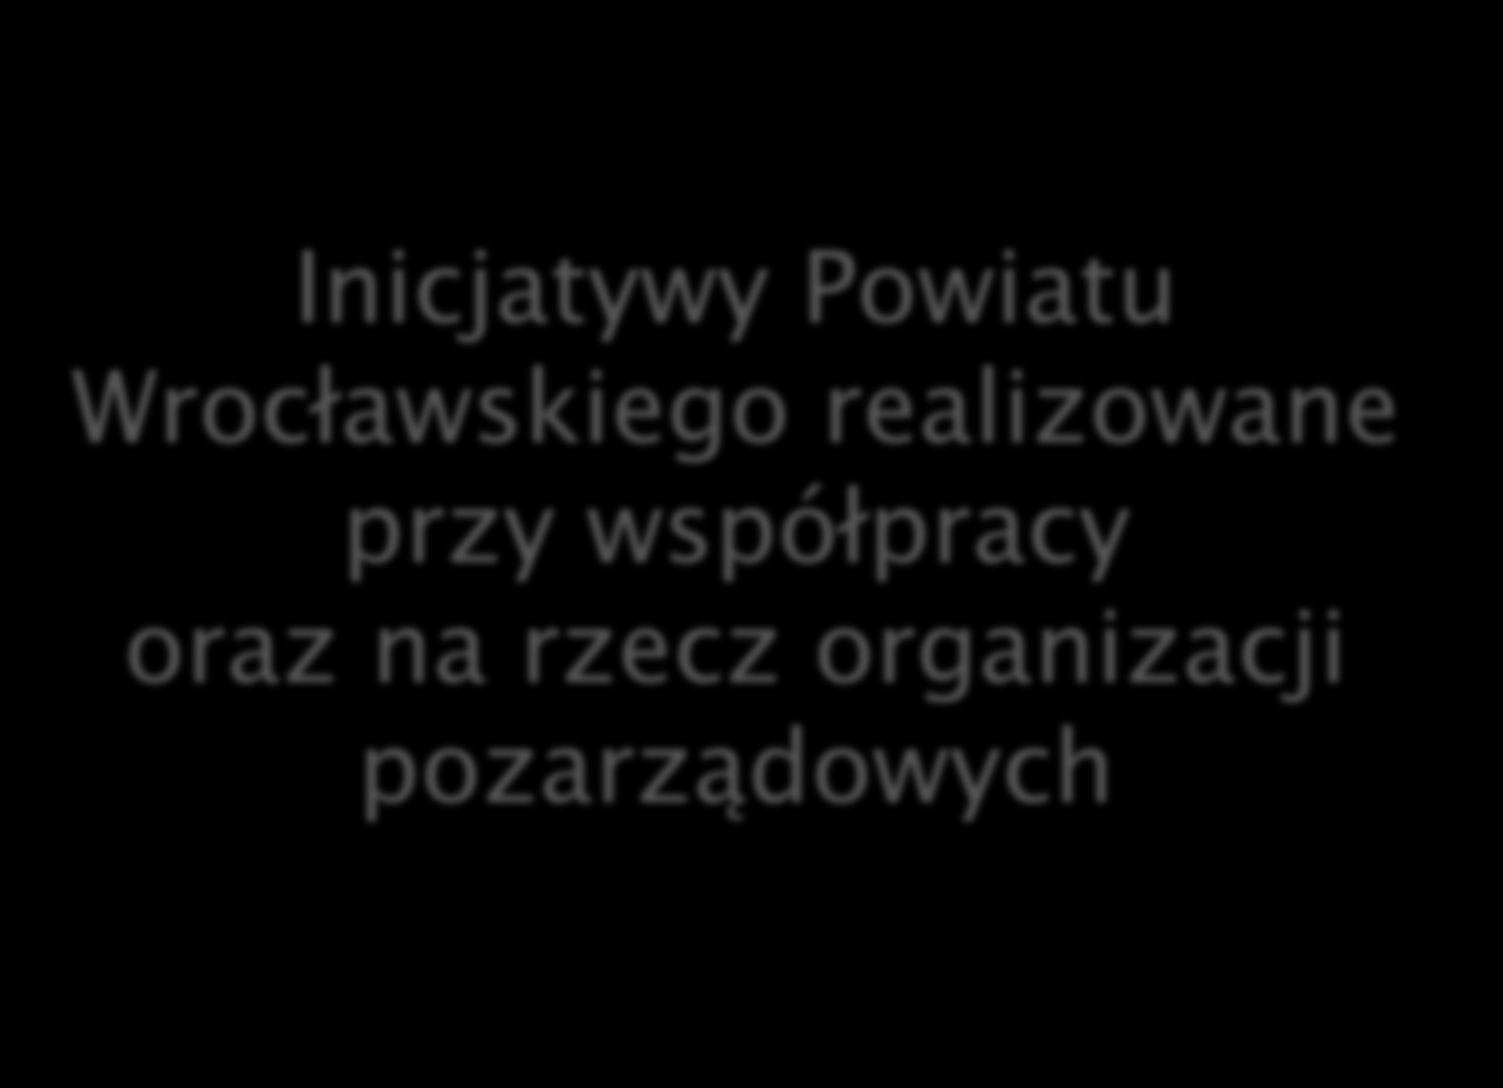 Inicjatywy Powiatu Wrocławskiego realizowane przy